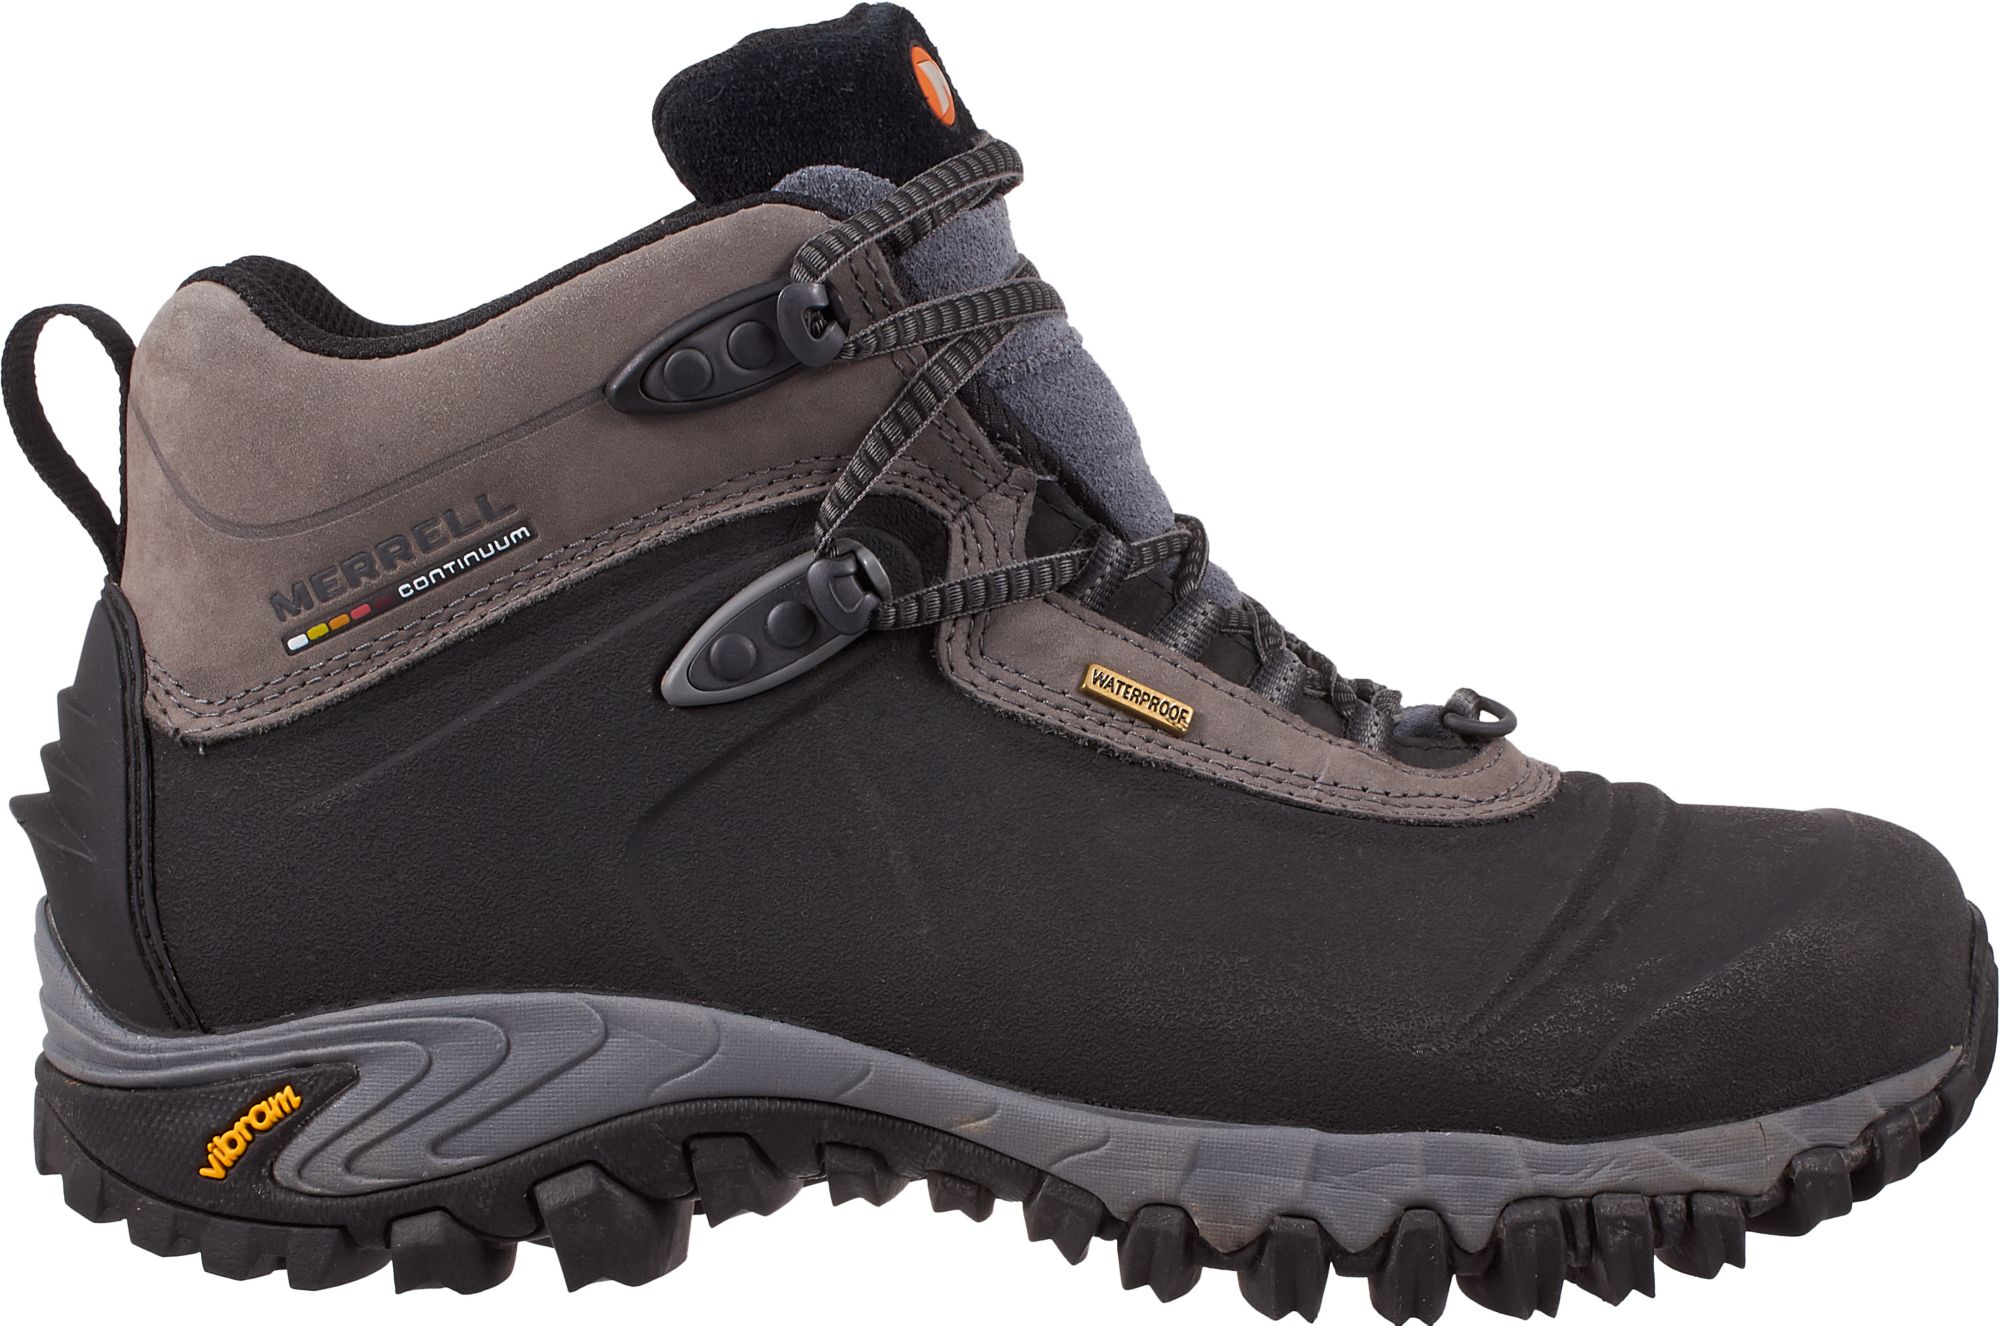 merrell waterproof winter boots